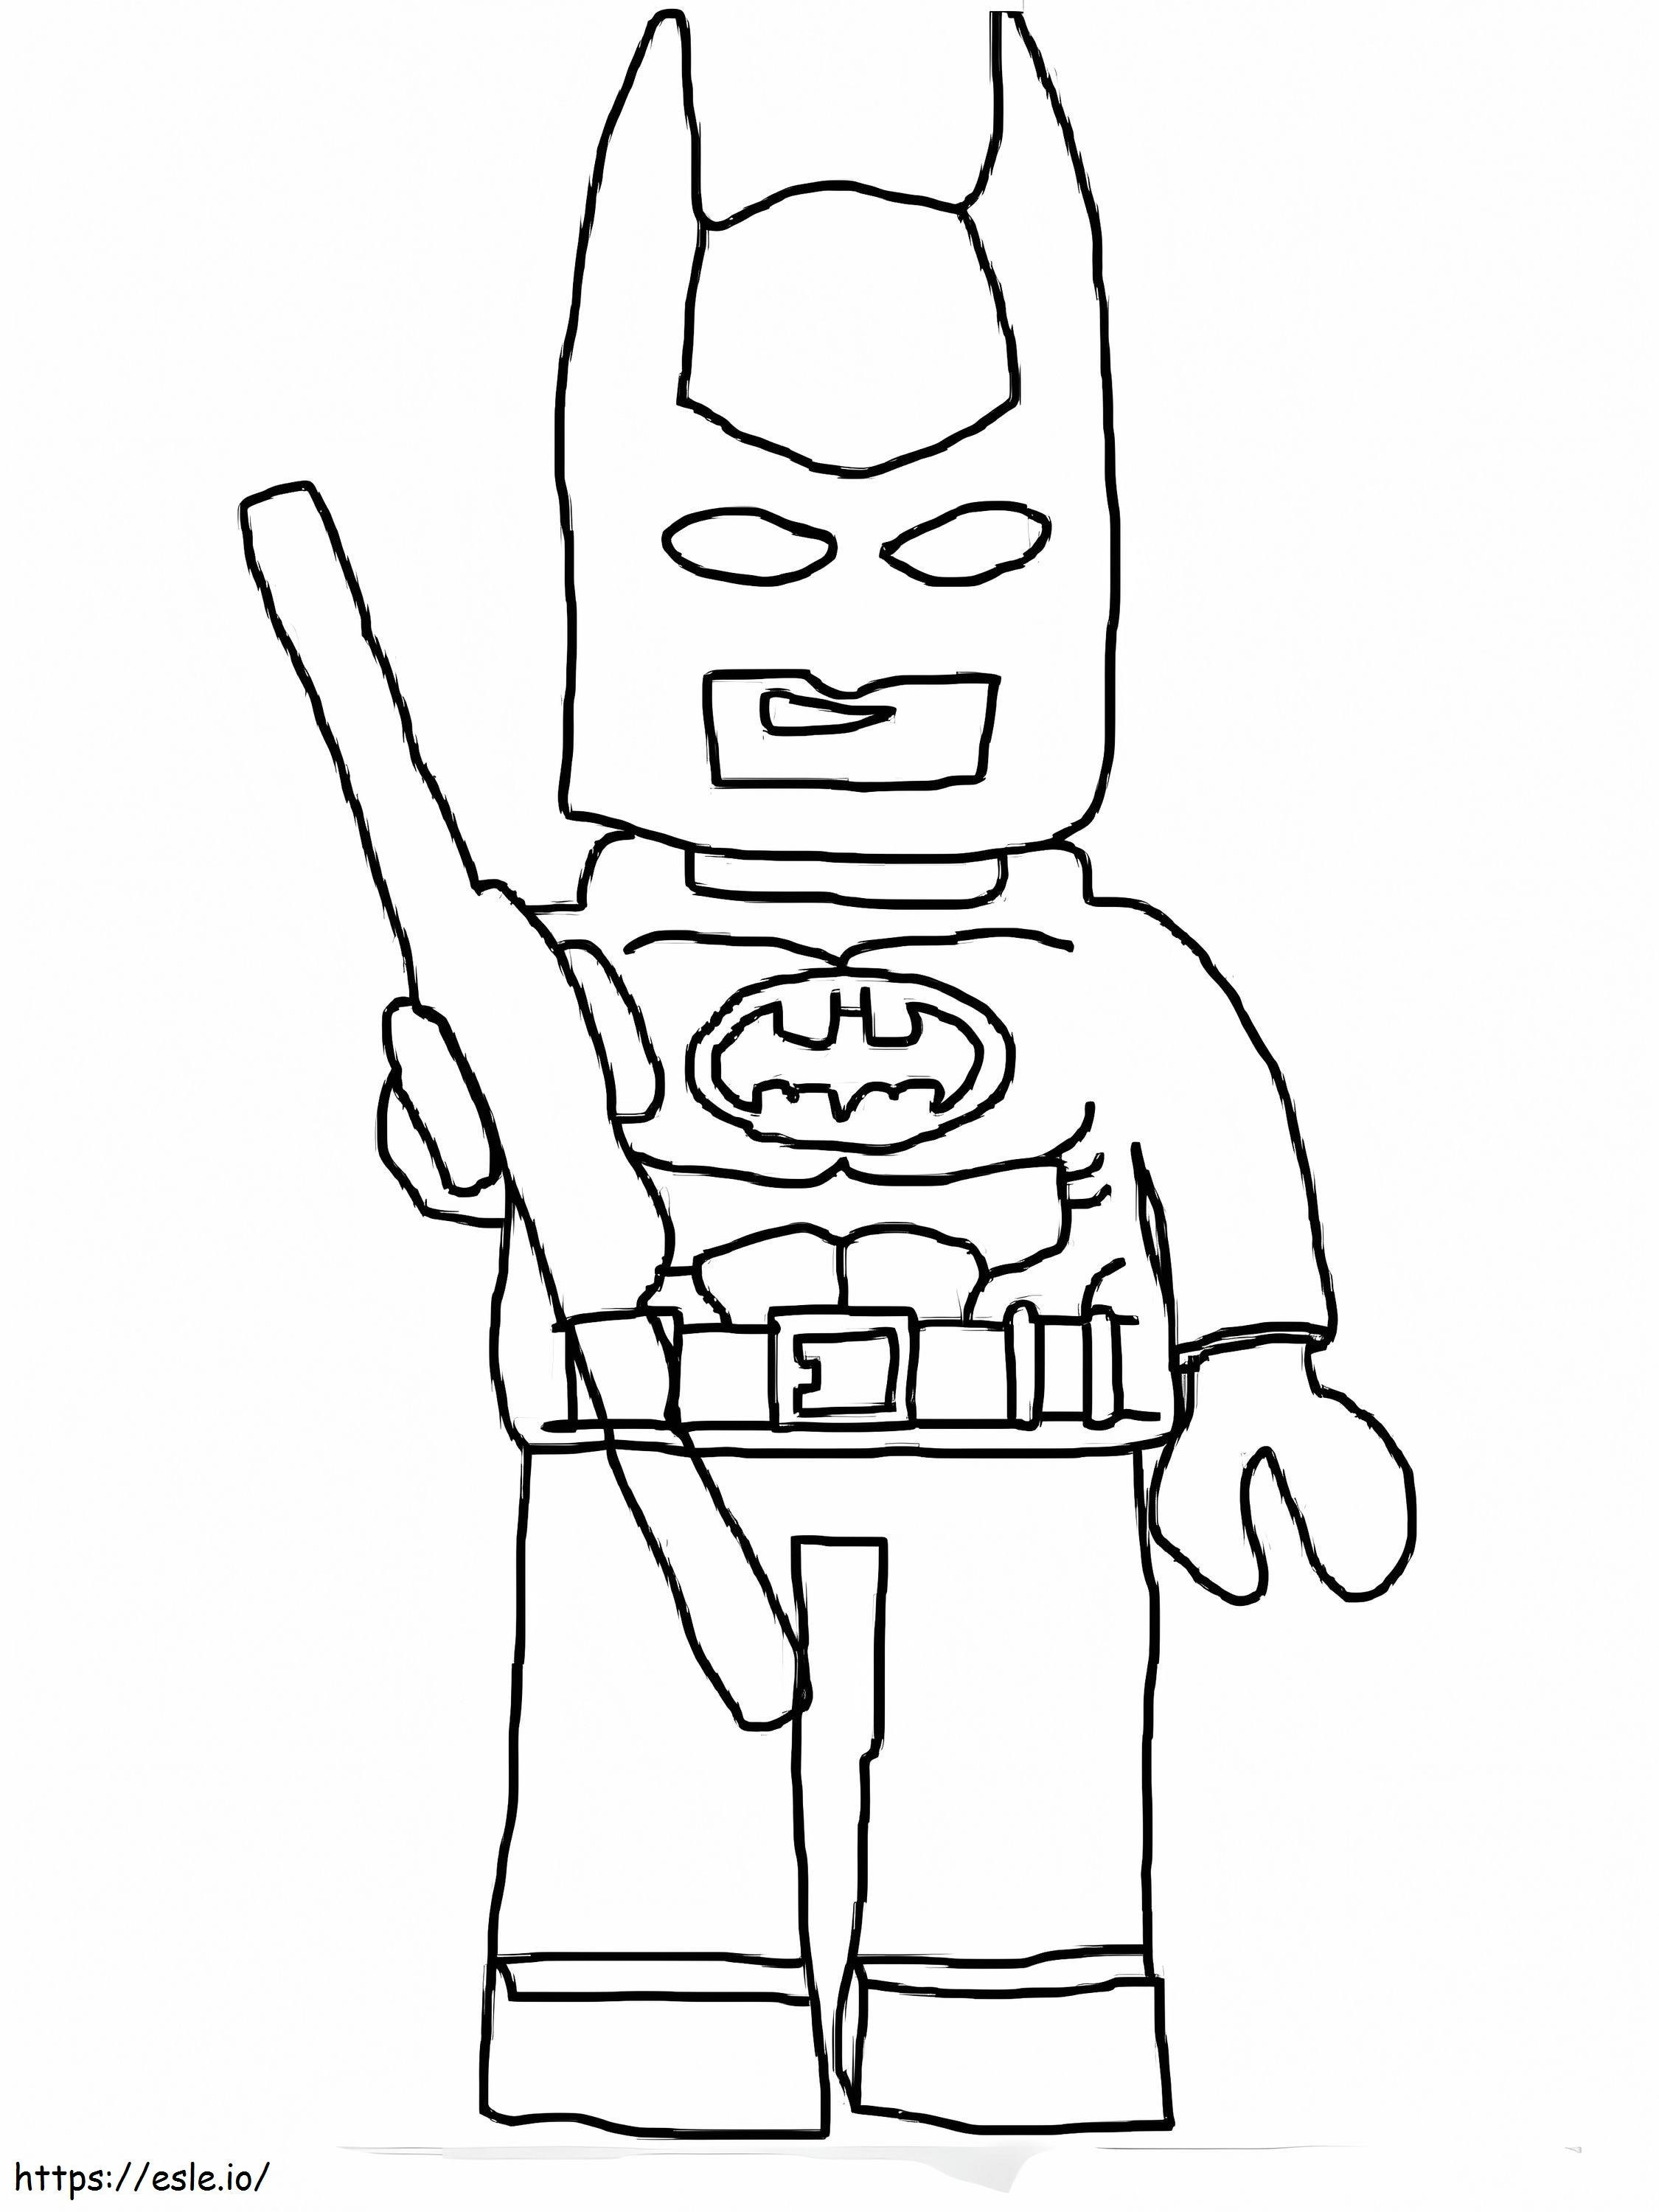 Lego Batman 4 coloring page